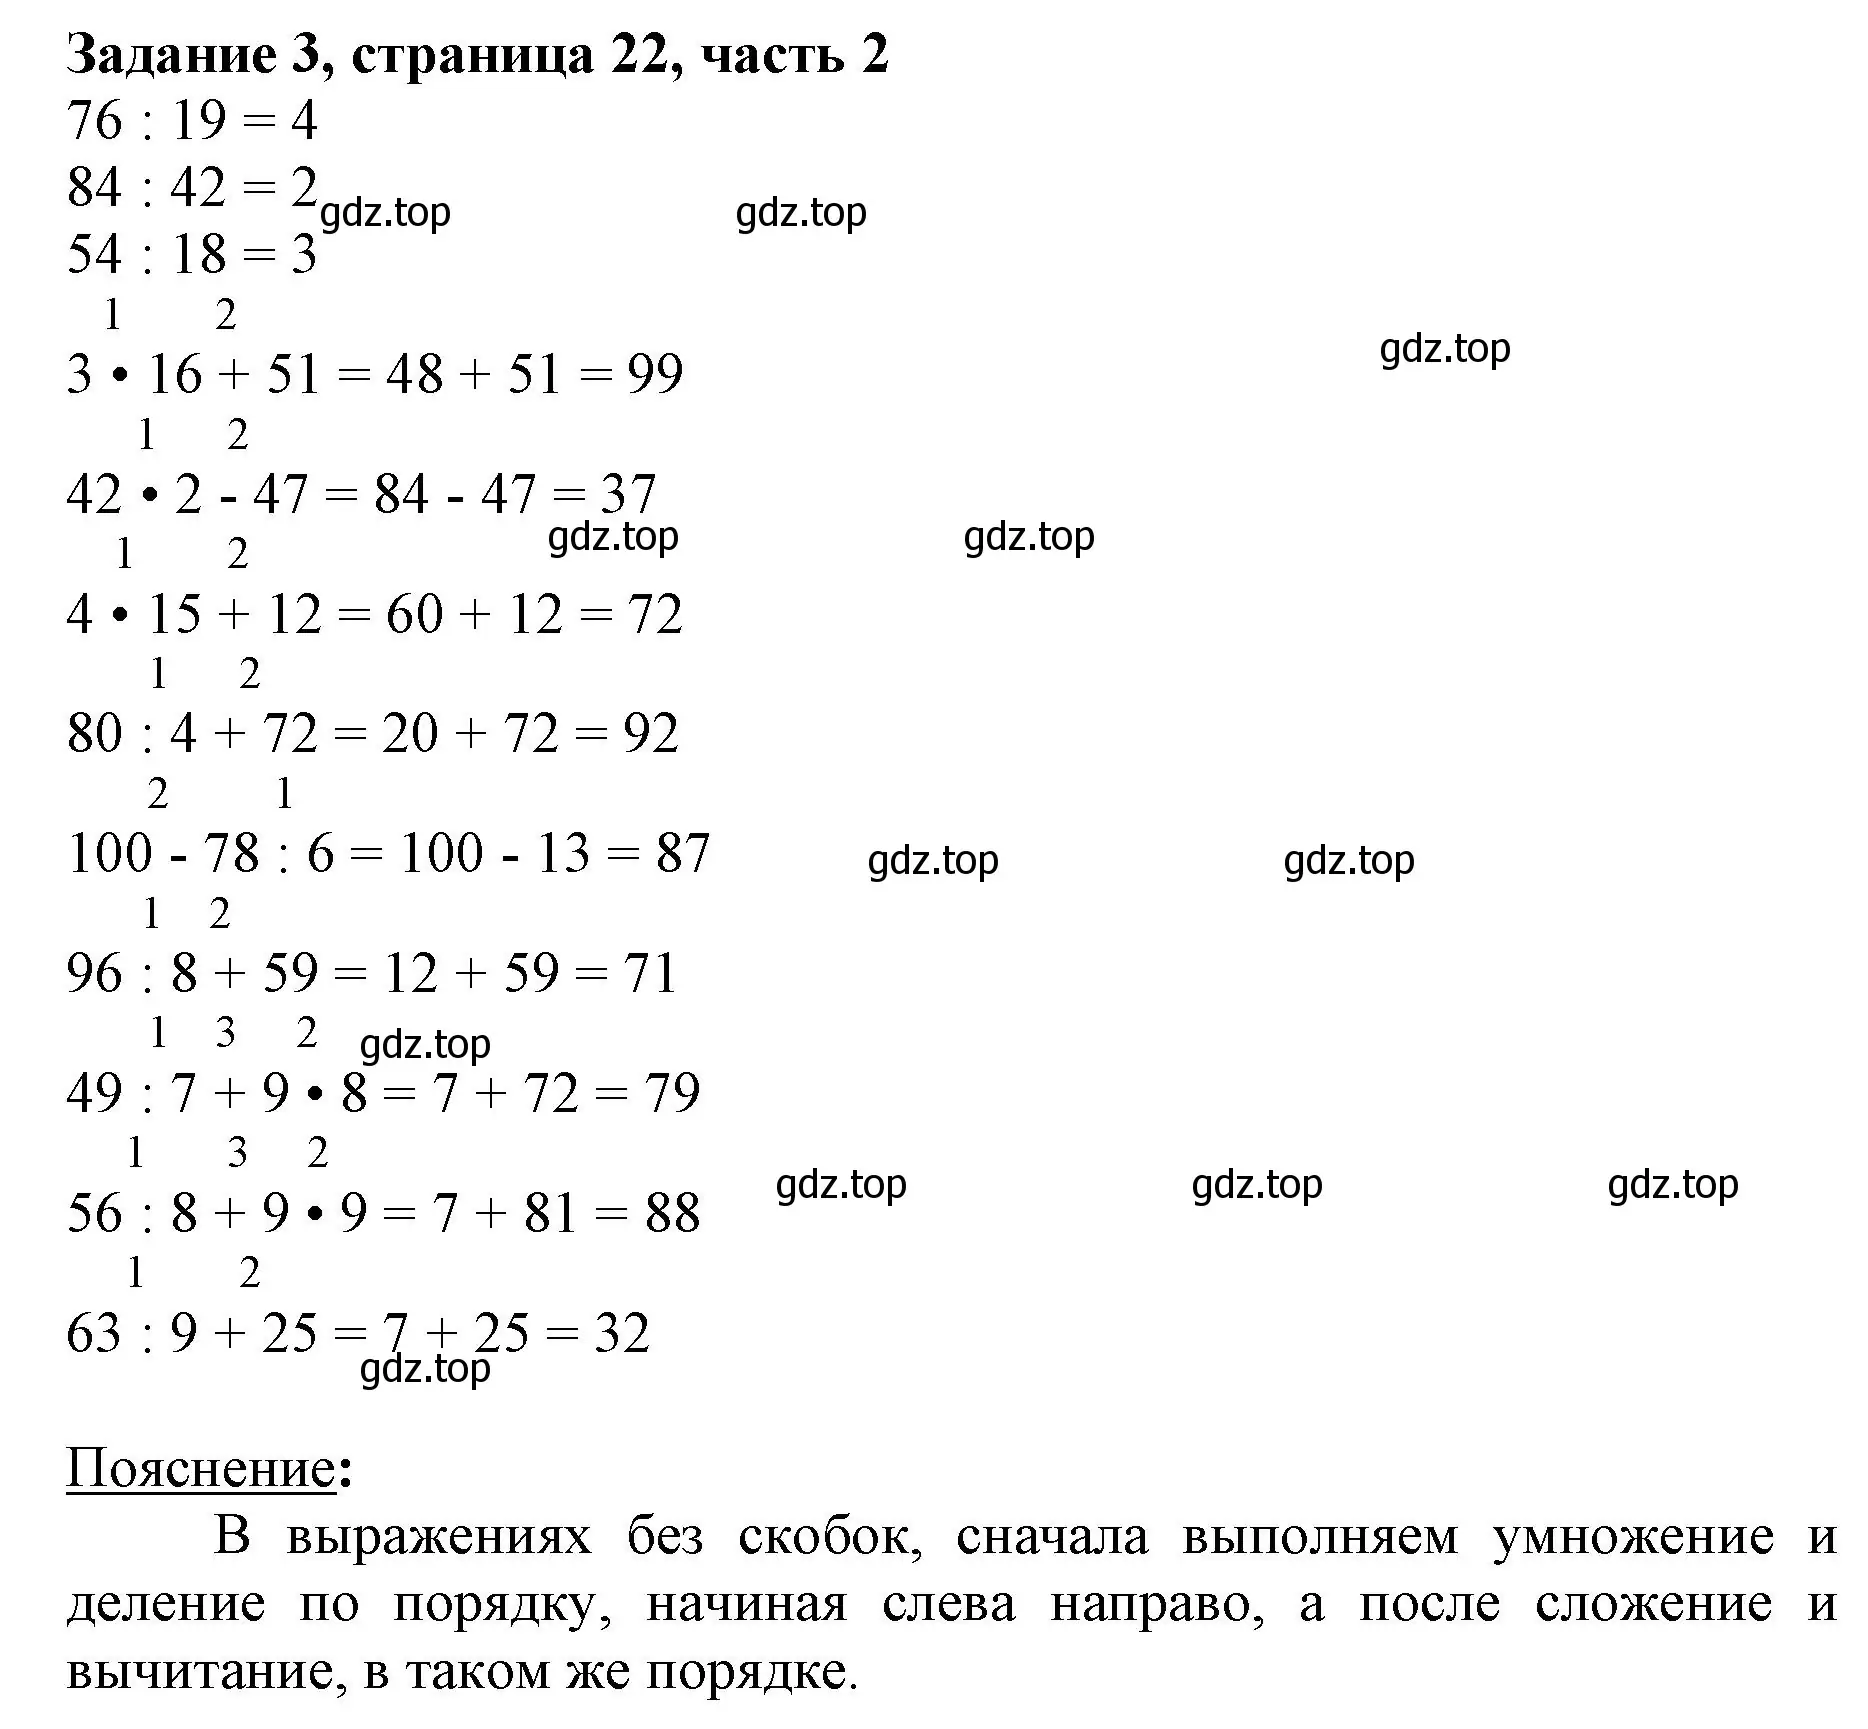 Решение номер 3 (страница 22) гдз по математике 3 класс Моро, Бантова, учебник 2 часть